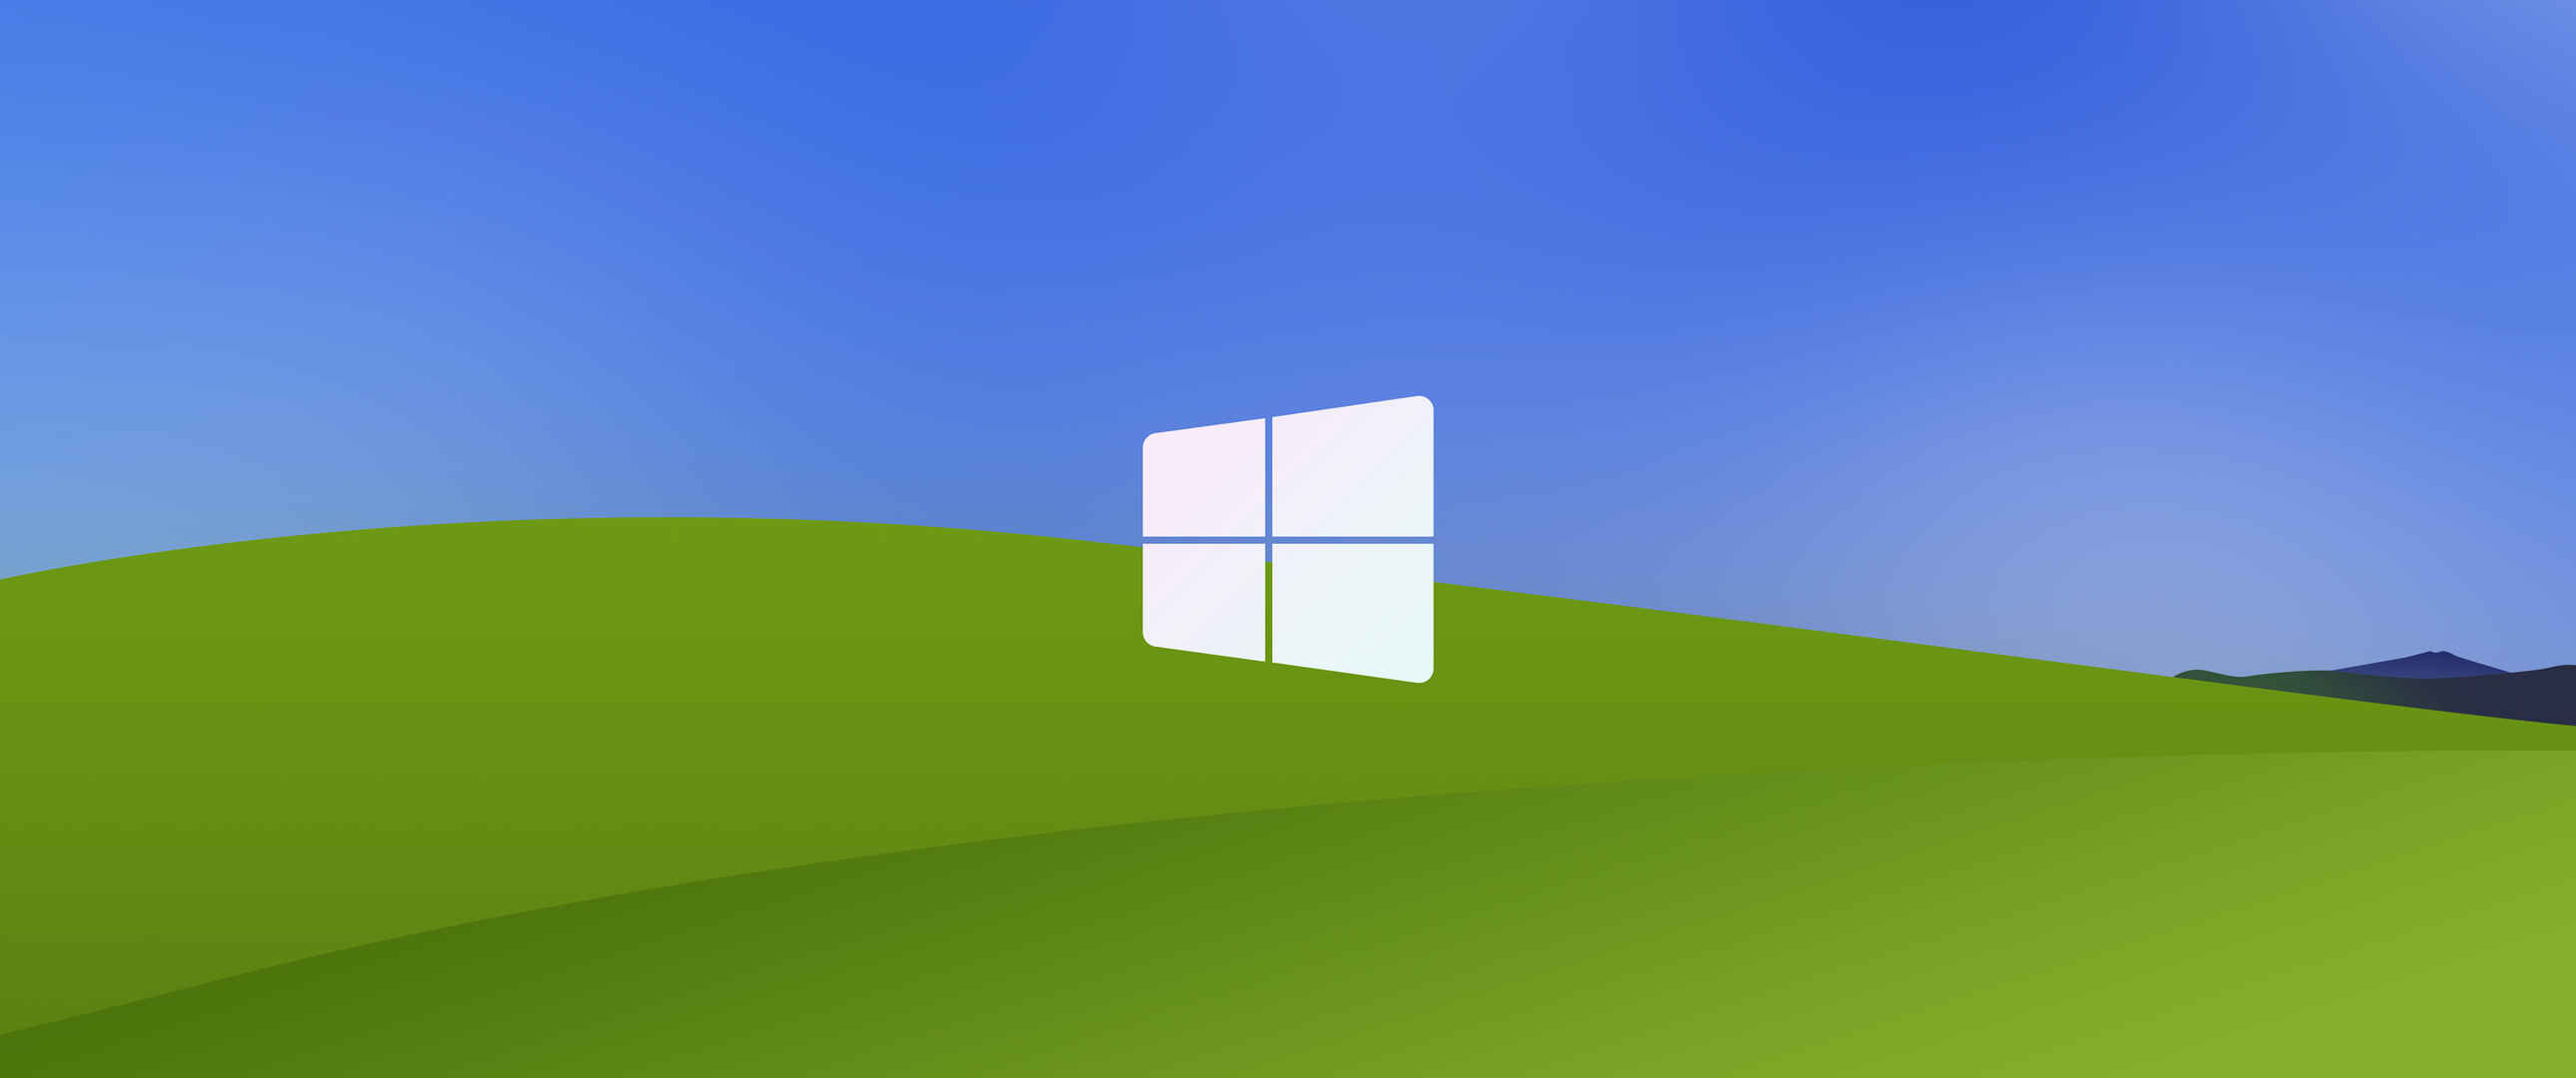 简约蓝天白云 Windows XP  3440x1440带鱼屏壁纸